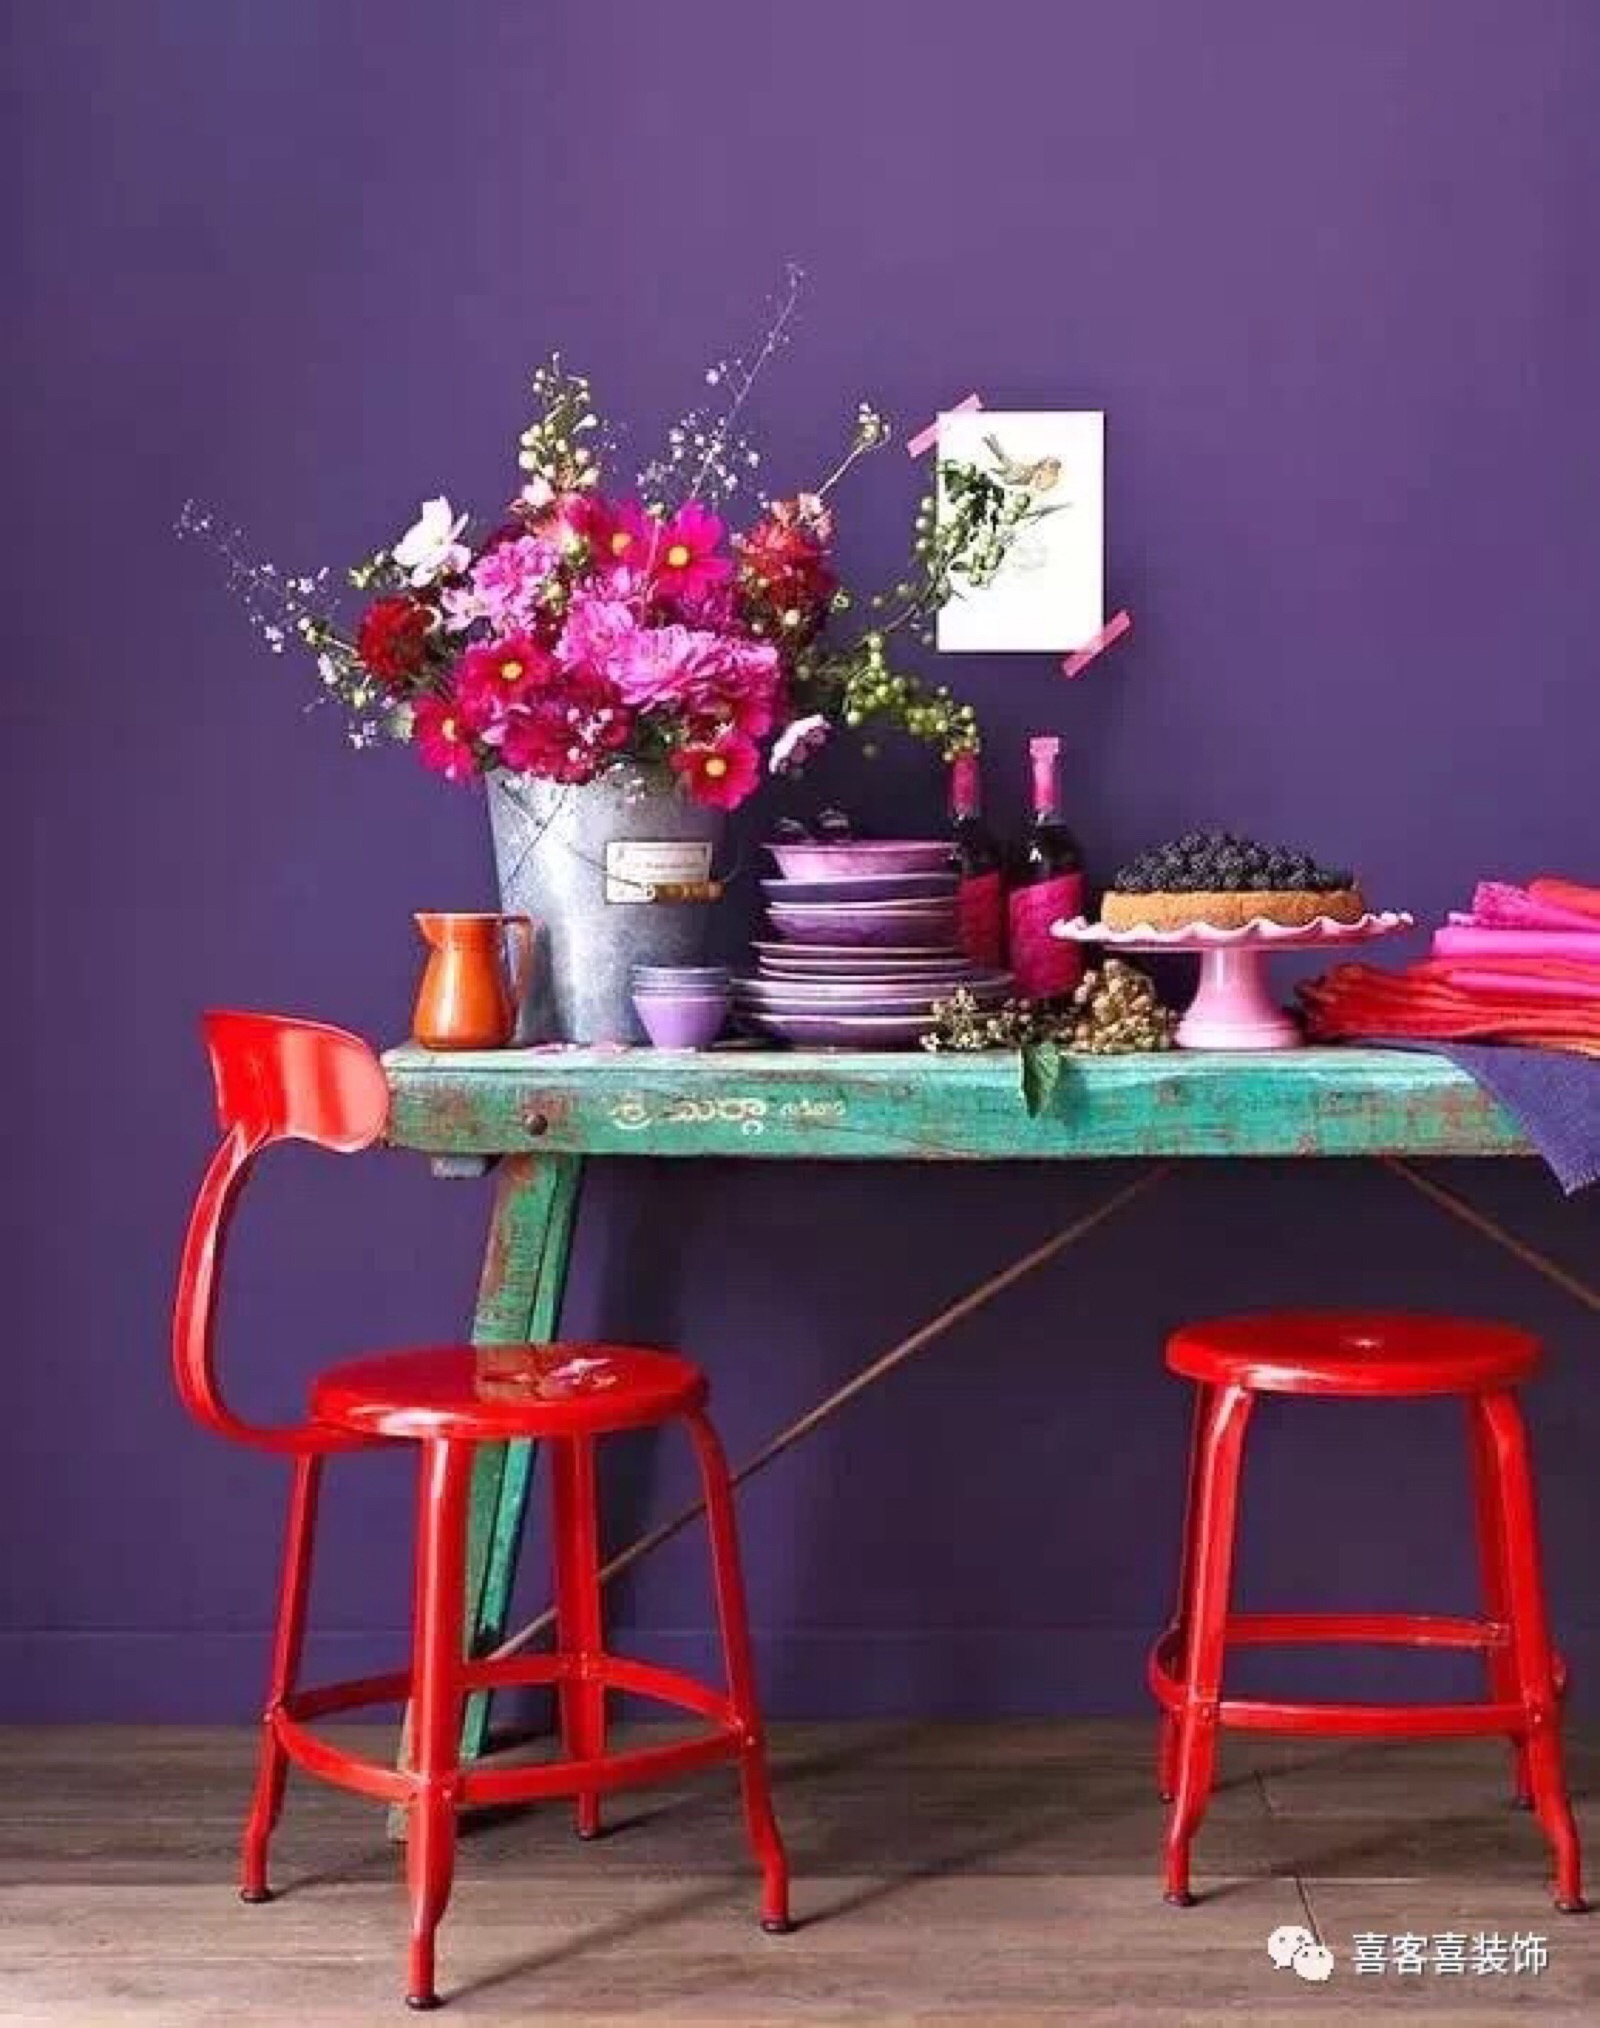 运用沙发之间的色彩呼应,紫外光色沙发搭配大红,粉红,桃红等红色系单